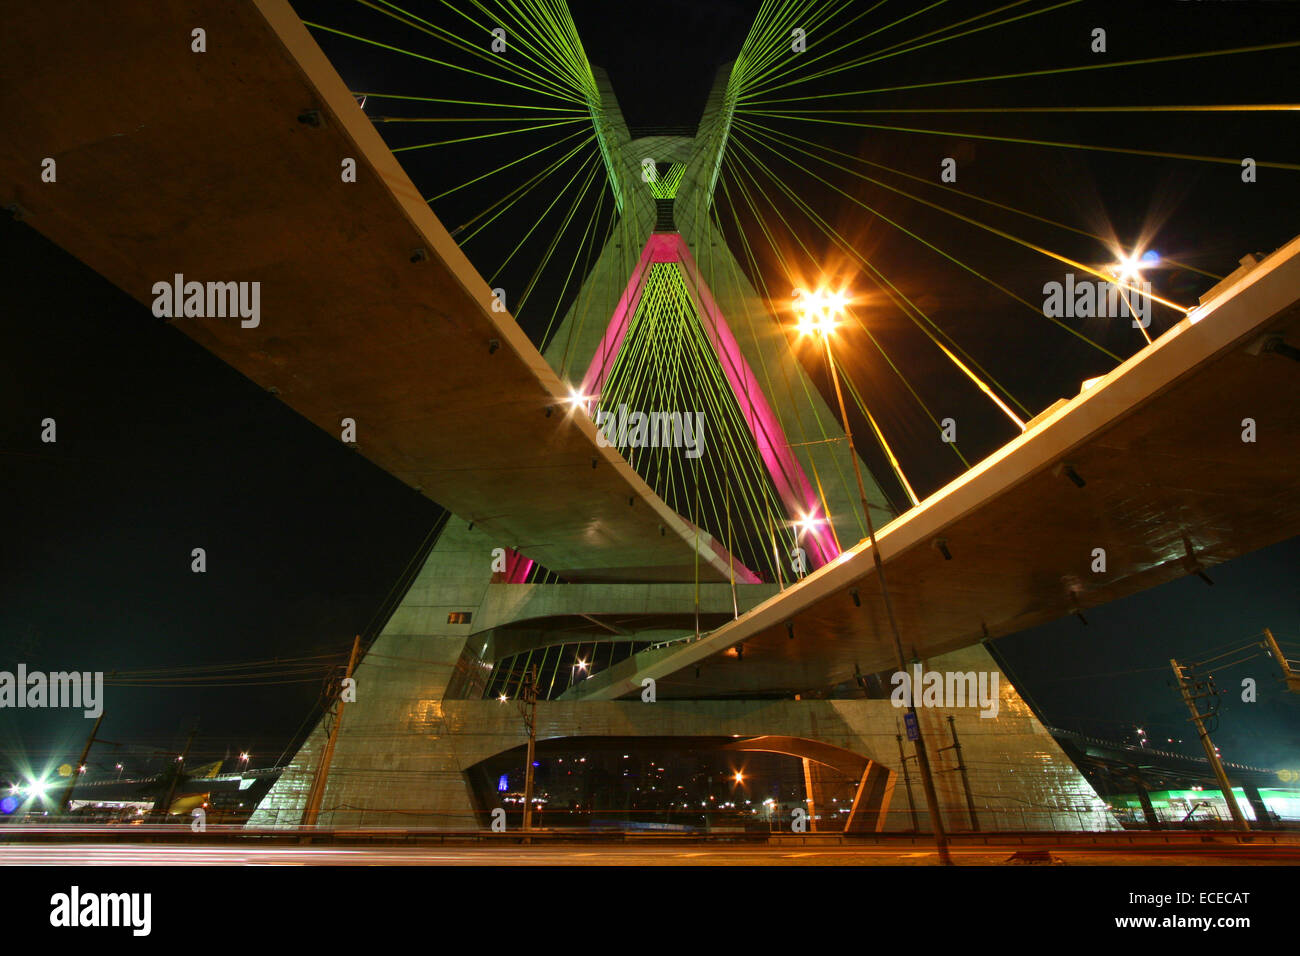 Brazil, Sao Paulo State, Sao Paulo, Octavio Frias de Oliveira bridge at night Stock Photo